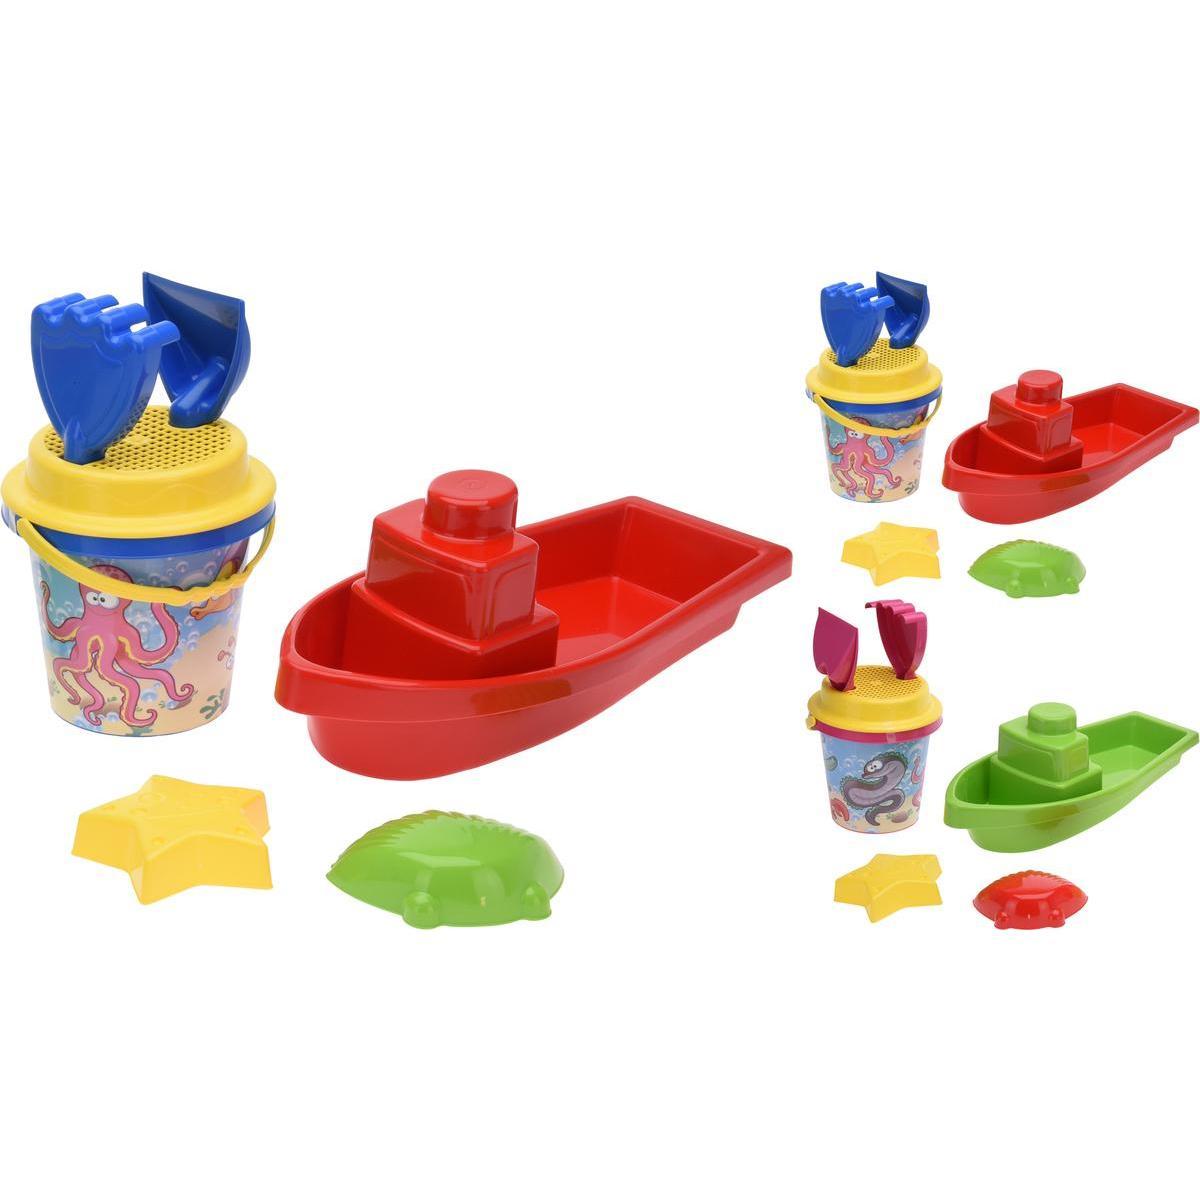 7 jouets de plage - Multicolore